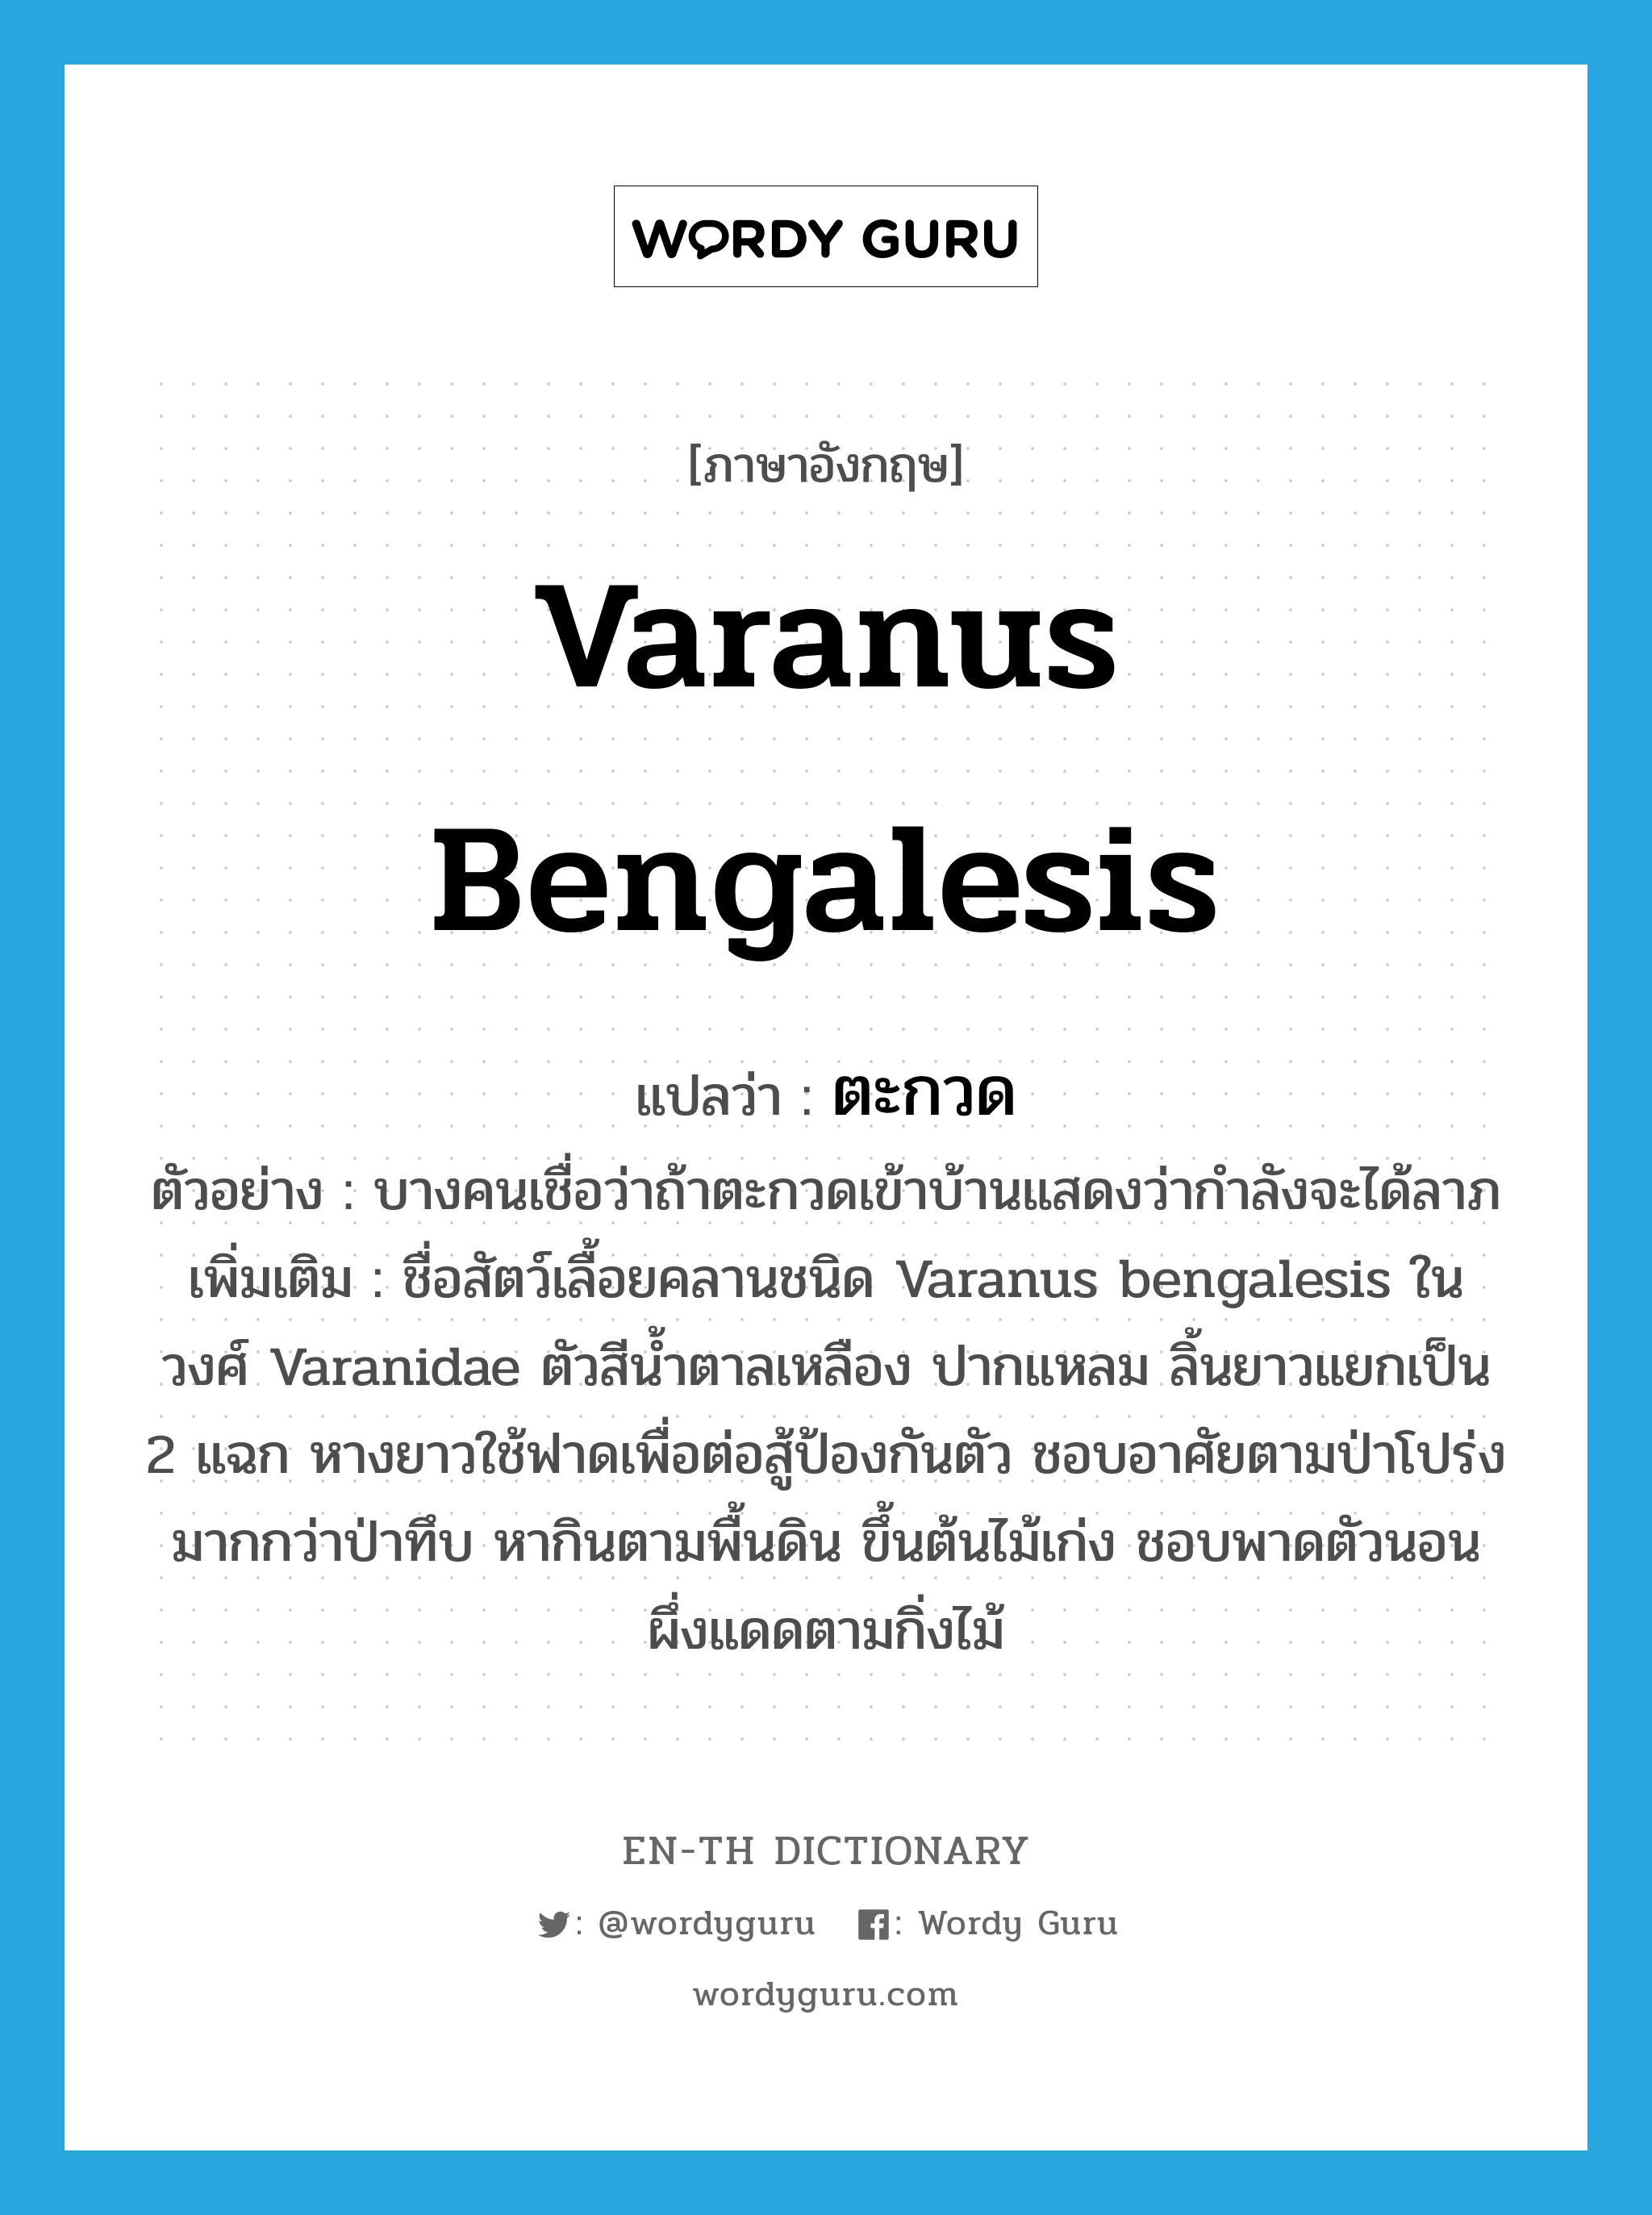 ตะกวด ภาษาอังกฤษ?, คำศัพท์ภาษาอังกฤษ ตะกวด แปลว่า Varanus bengalesis ประเภท N ตัวอย่าง บางคนเชื่อว่าถ้าตะกวดเข้าบ้านแสดงว่ากำลังจะได้ลาภ เพิ่มเติม ชื่อสัตว์เลื้อยคลานชนิด Varanus bengalesis ในวงศ์ Varanidae ตัวสีน้ำตาลเหลือง ปากแหลม ลิ้นยาวแยกเป็น 2 แฉก หางยาวใช้ฟาดเพื่อต่อสู้ป้องกันตัว ชอบอาศัยตามป่าโปร่งมากกว่าป่าทึบ หากินตามพื้นดิน ขึ้นต้นไม้เก่ง ชอบพาดตัวนอนผึ่งแดดตามกิ่งไม้ หมวด N